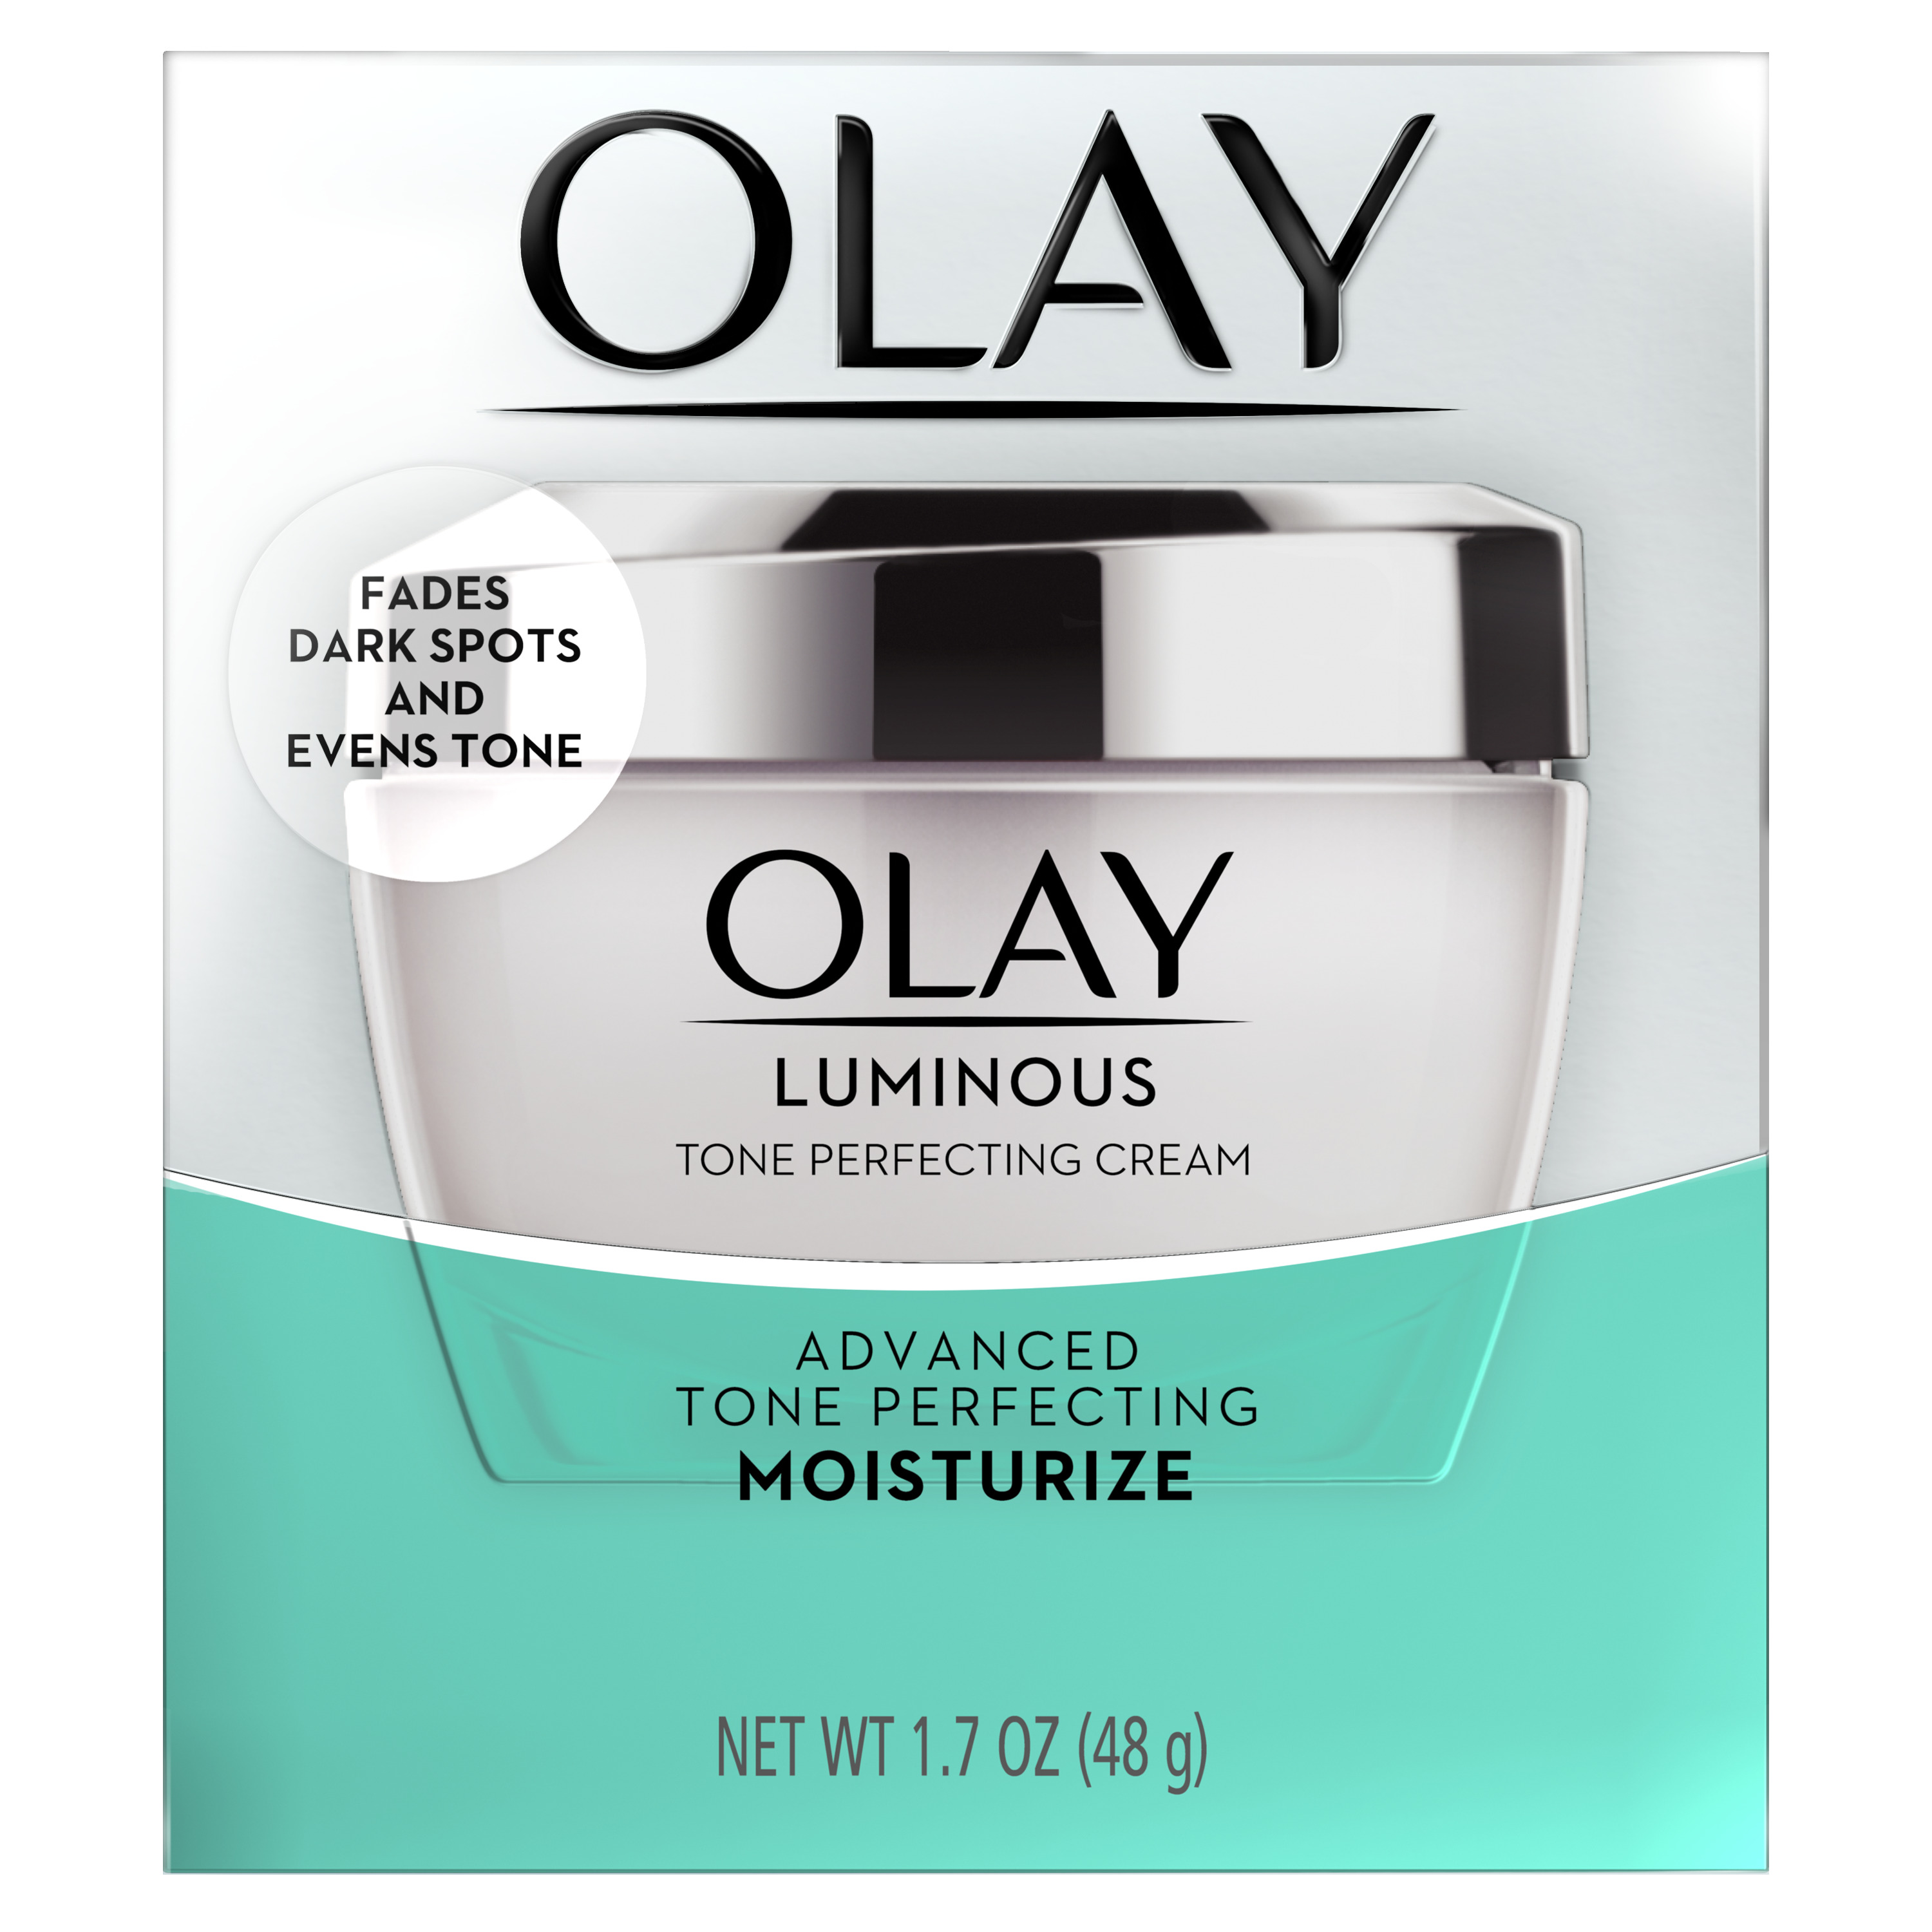 Olay Luminous Tone Perfecting Cream Face Moisturizer, 1.7 oz - image 4 of 7